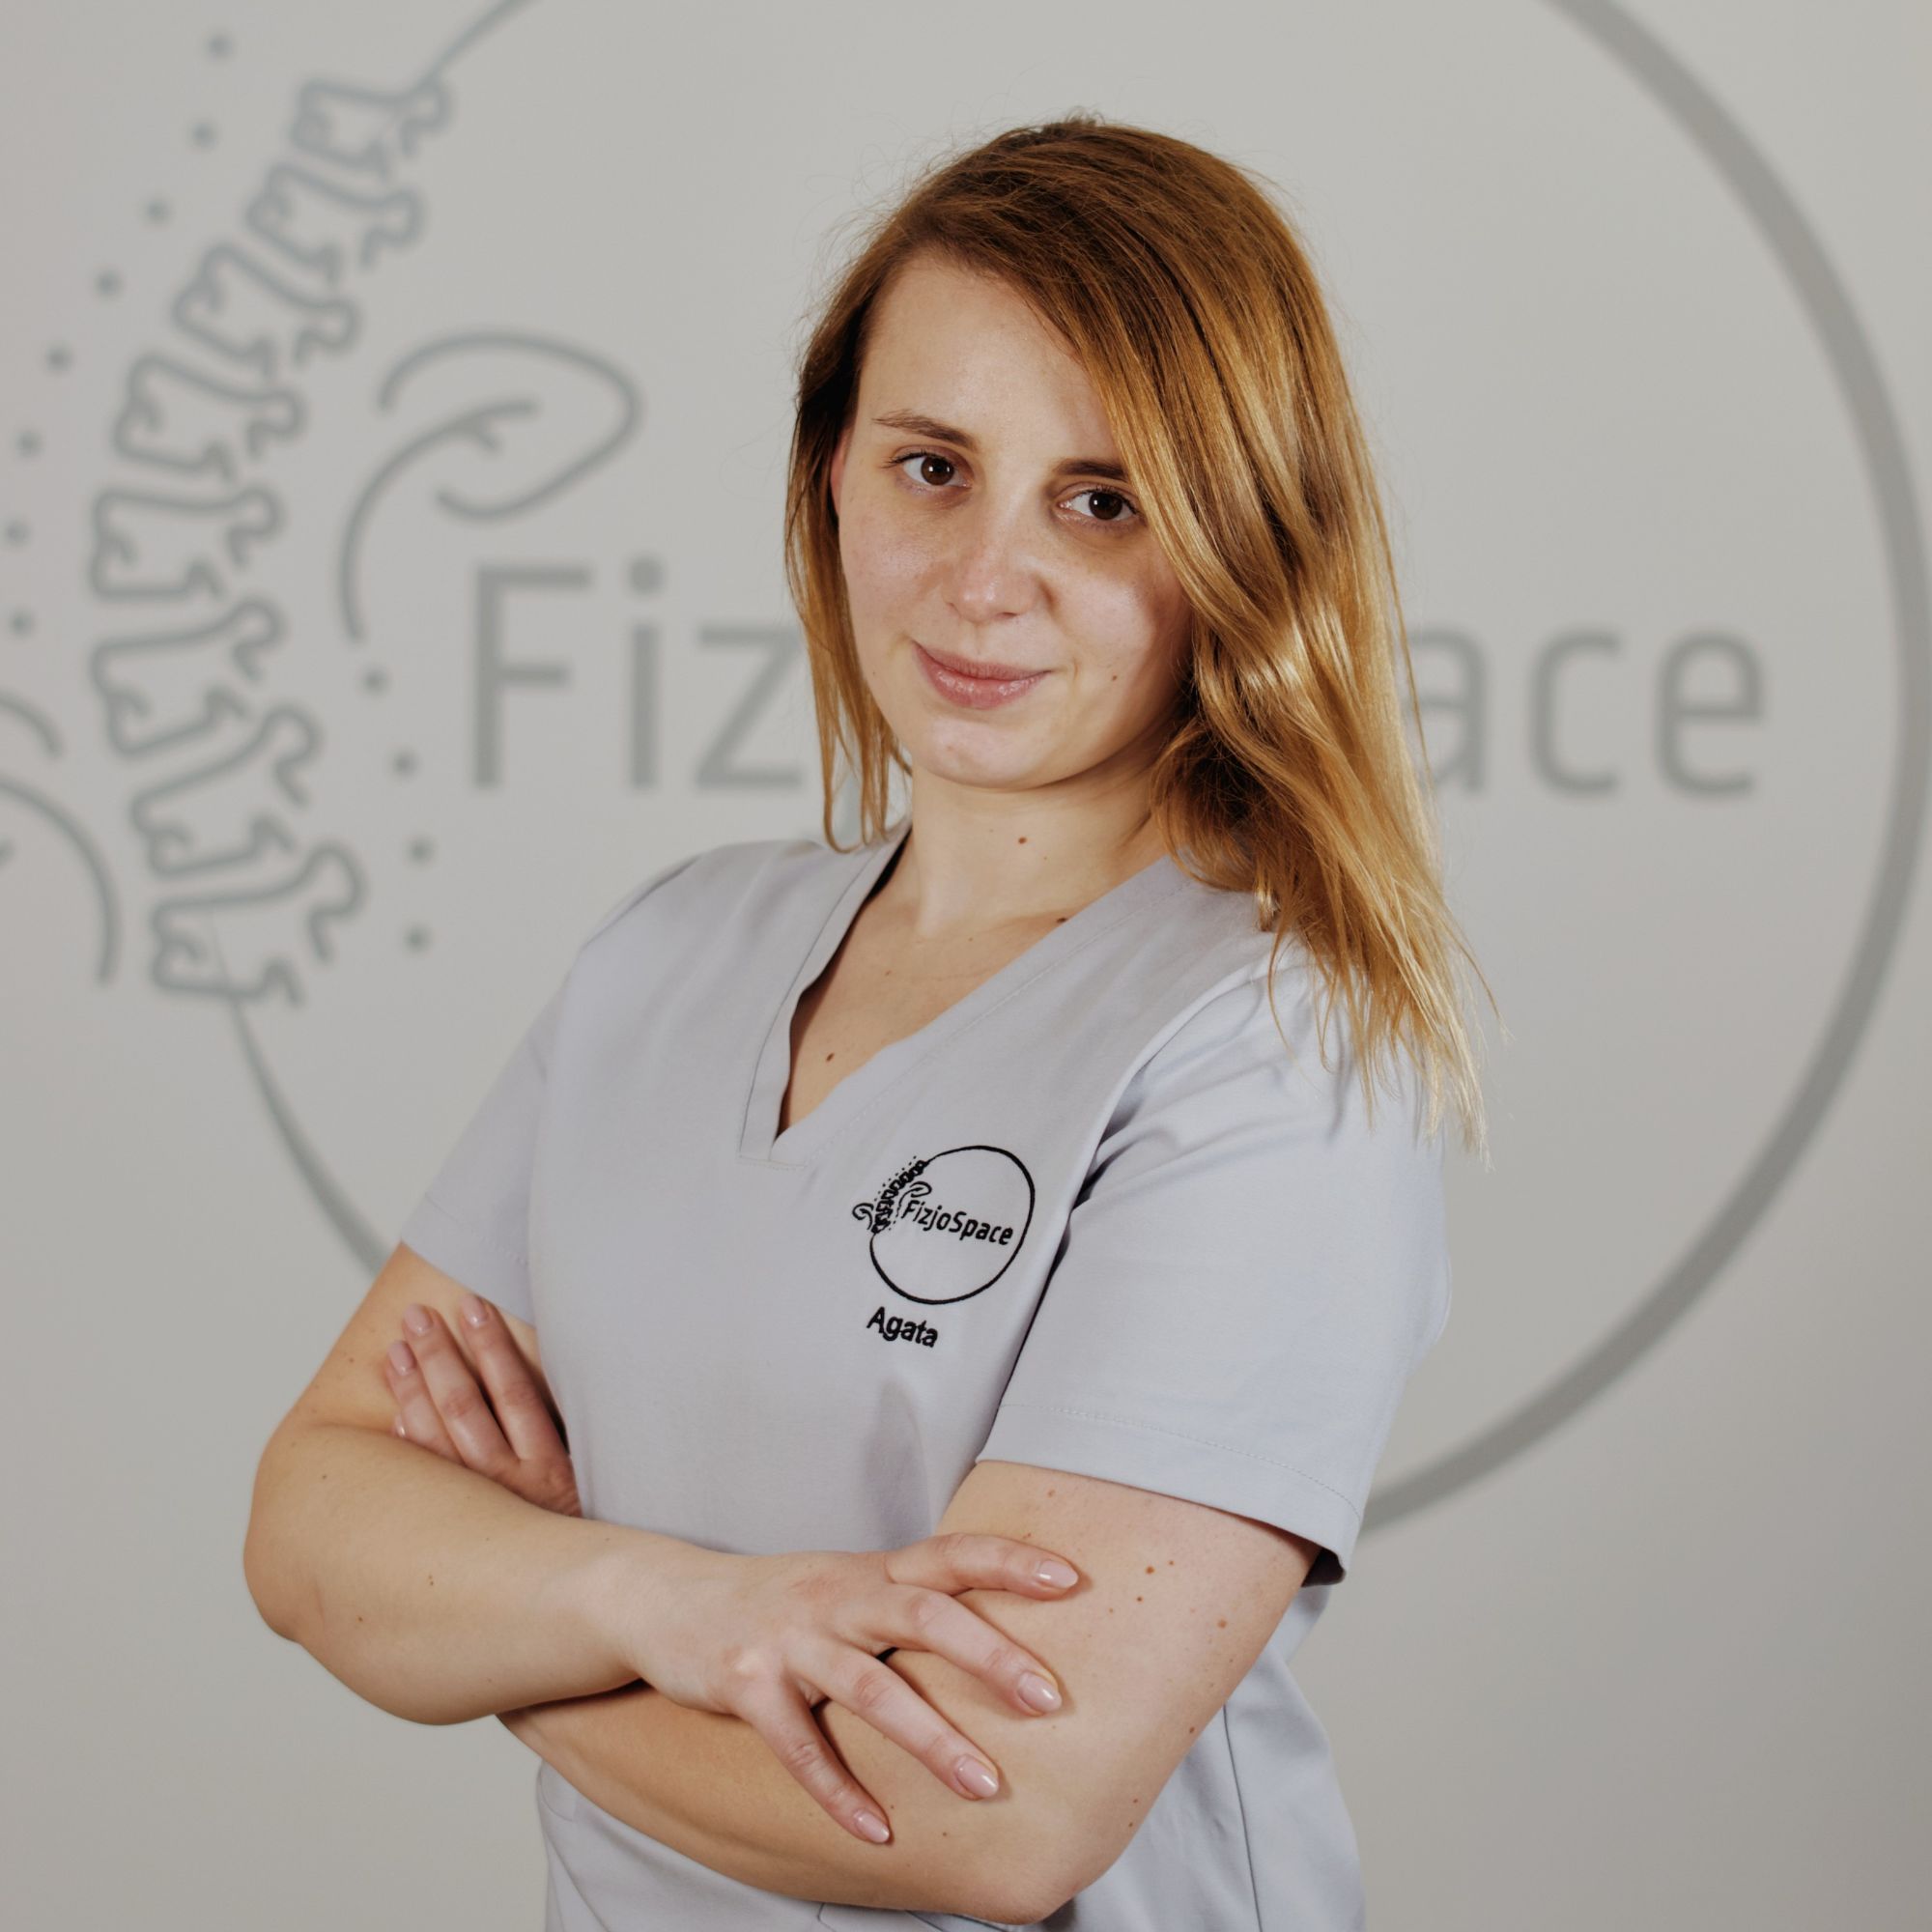 Agata Burzyńska - Wandzik - FizjoSpace